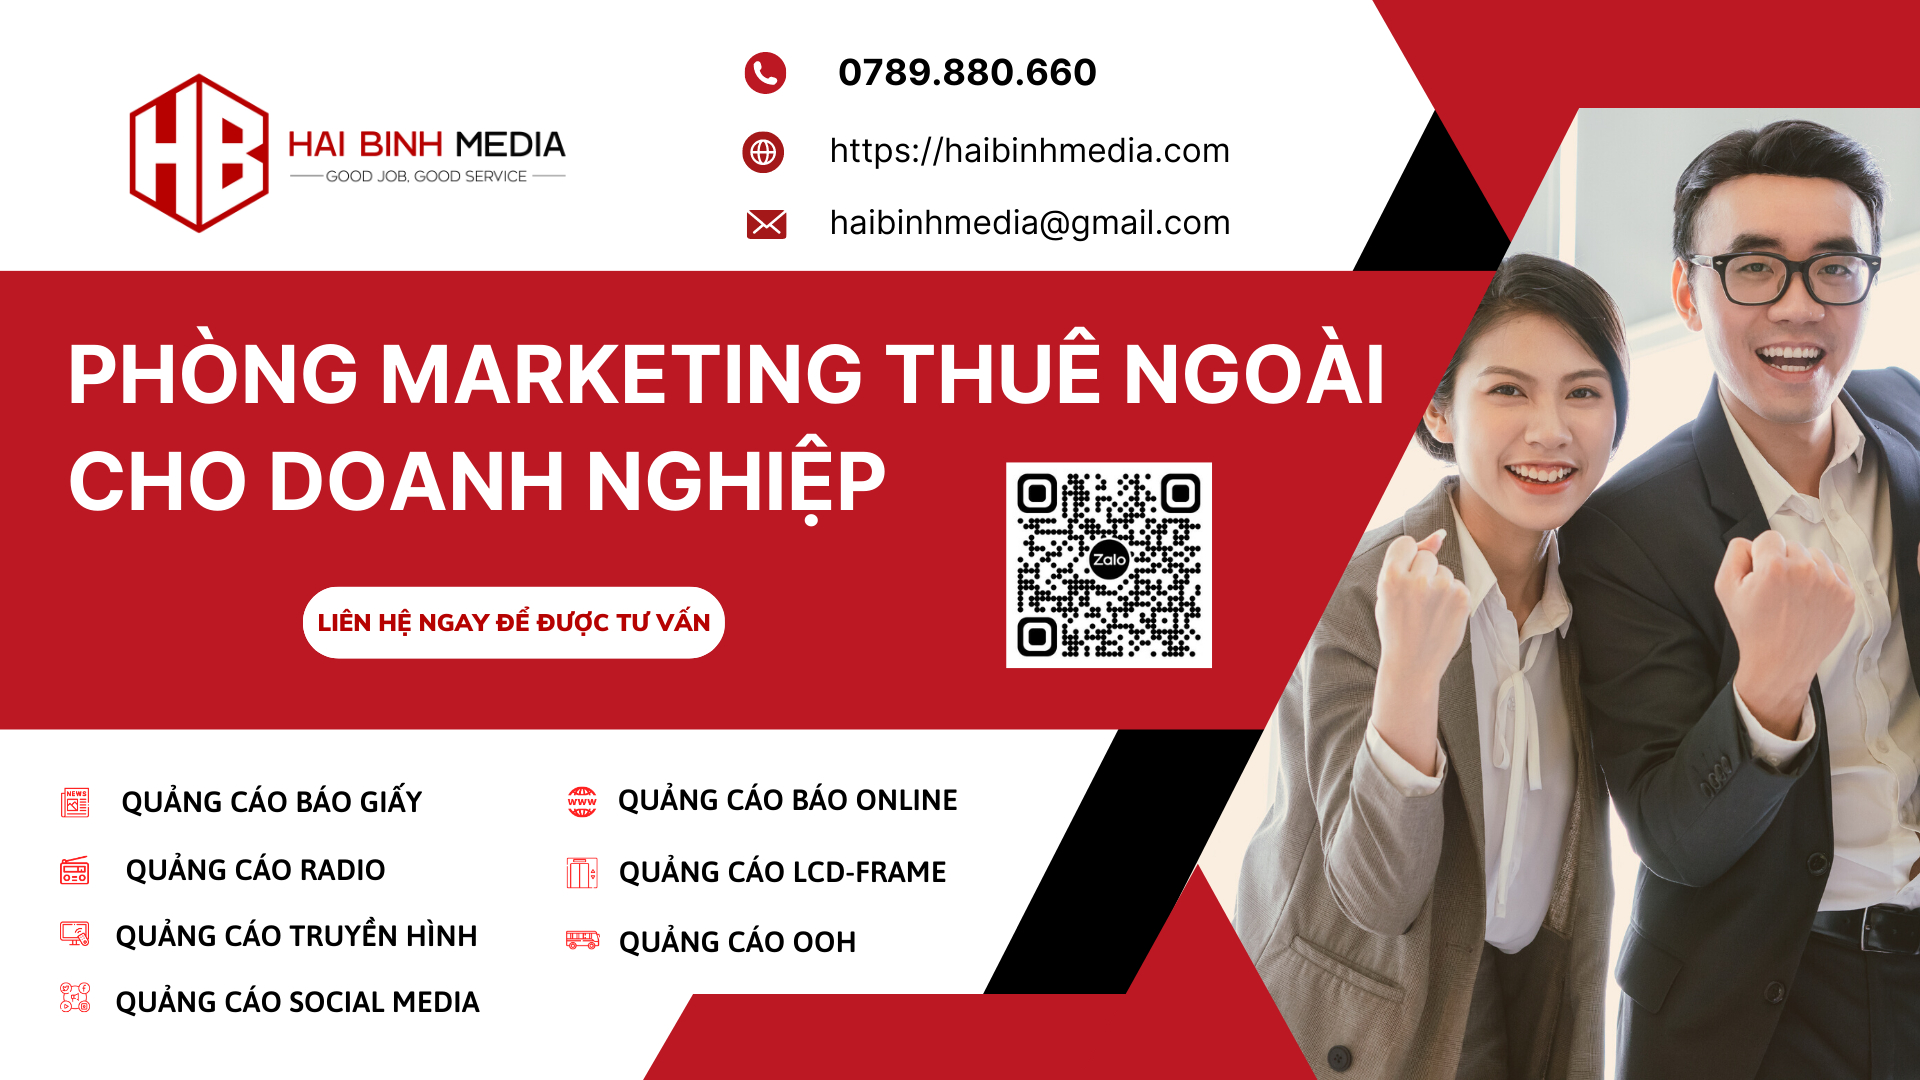 Hải Bình Media-Phòng marketing thuê ngoài cho doanh nghiệp